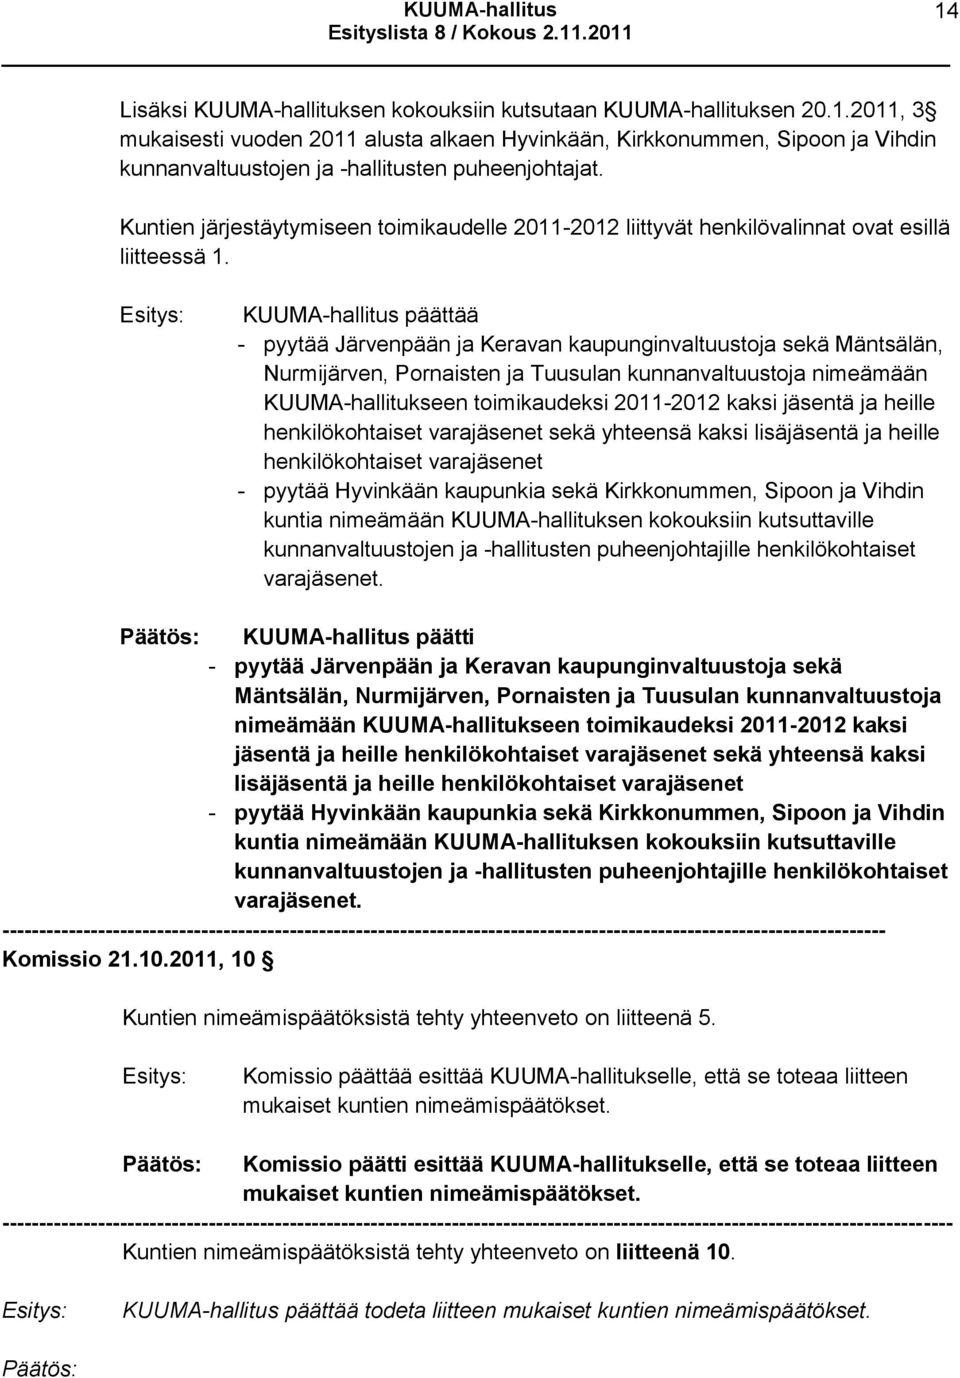 KUUMA-hallitus päättää - pyytää Järvenpään ja Keravan kaupunginvaltuustoja sekä Mäntsälän, Nurmijärven, Pornaisten ja Tuusulan kunnanvaltuustoja nimeämään KUUMA-hallitukseen toimikaudeksi 2011-2012